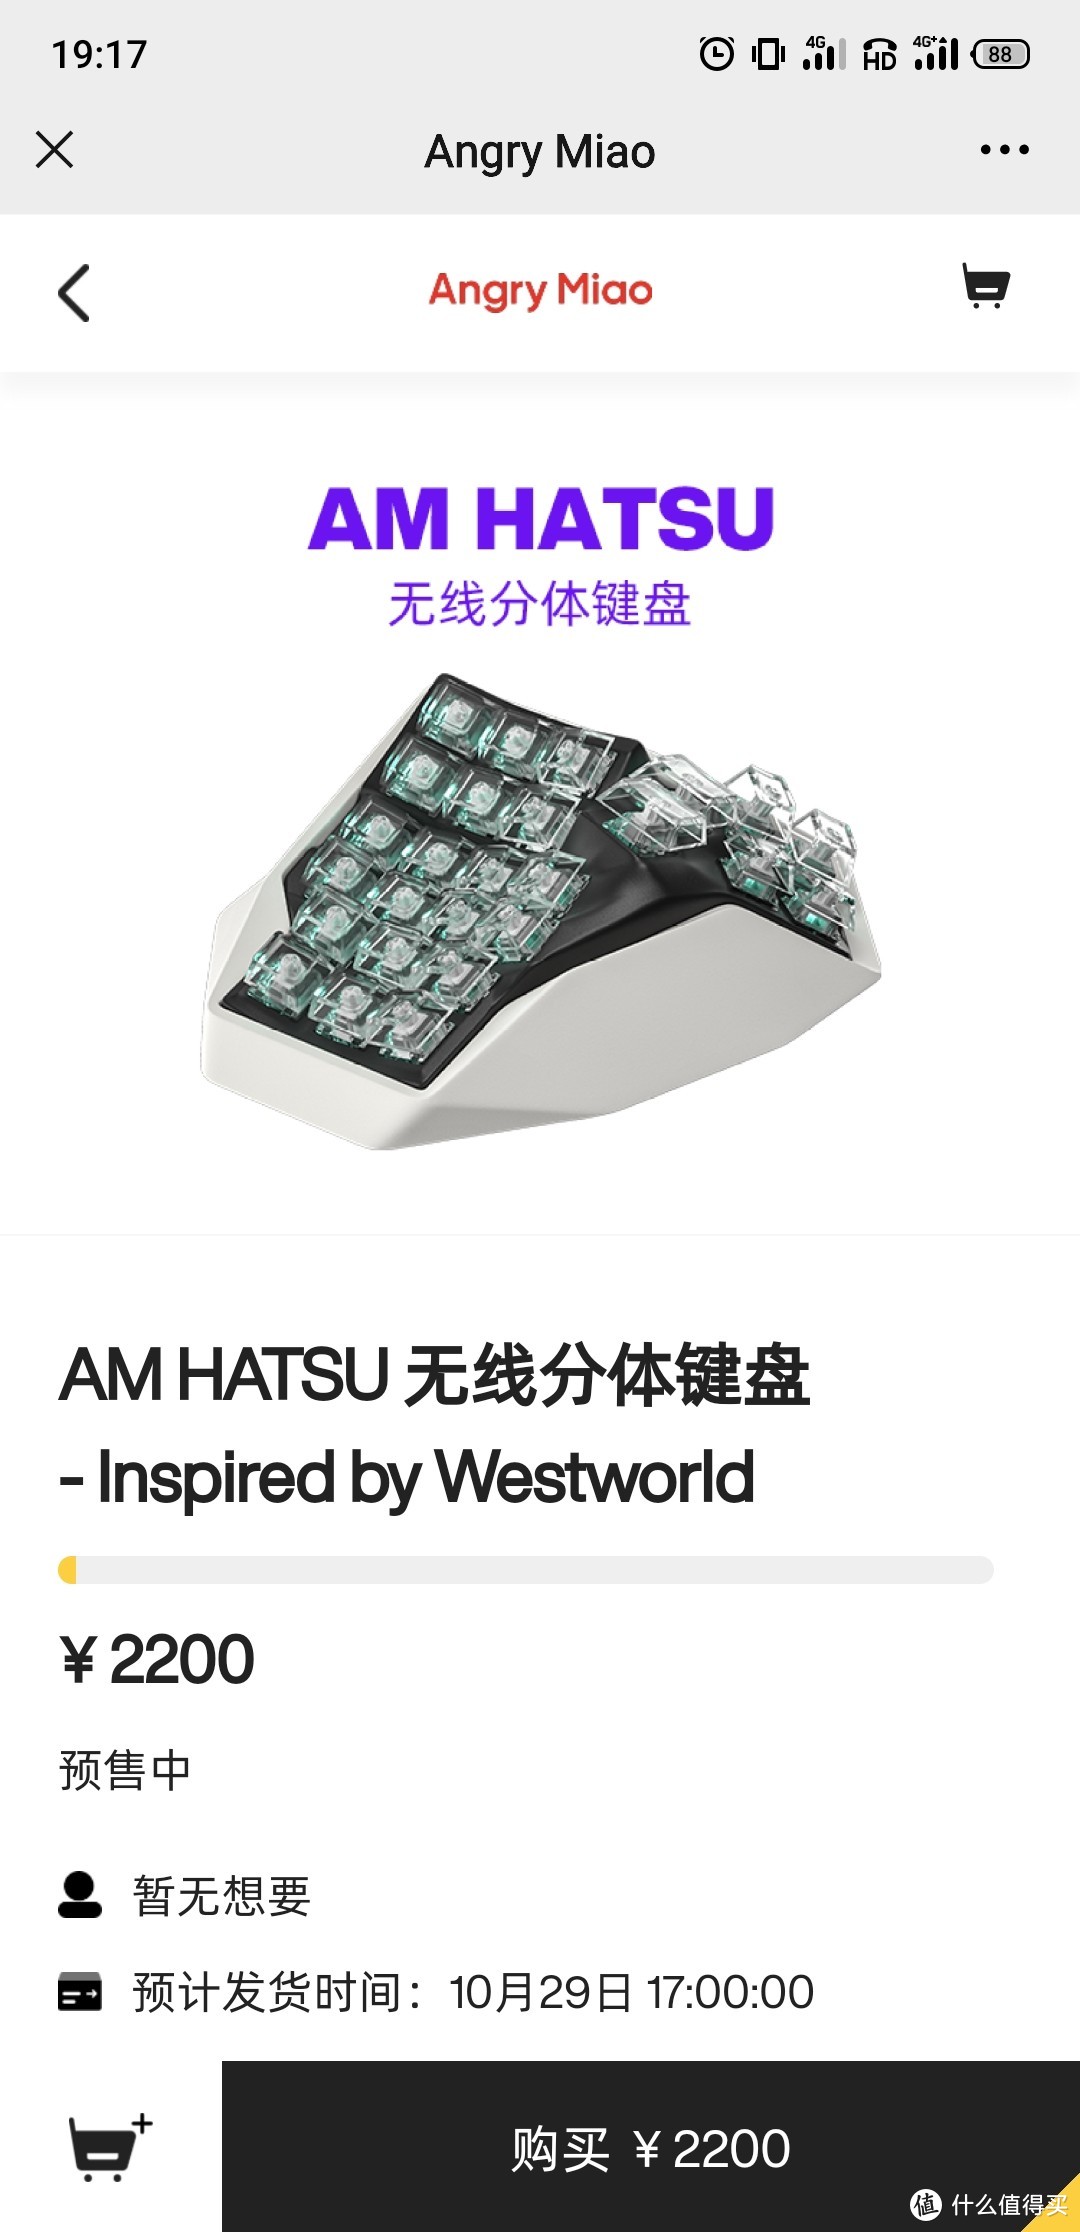 这是你见过最贵的键盘